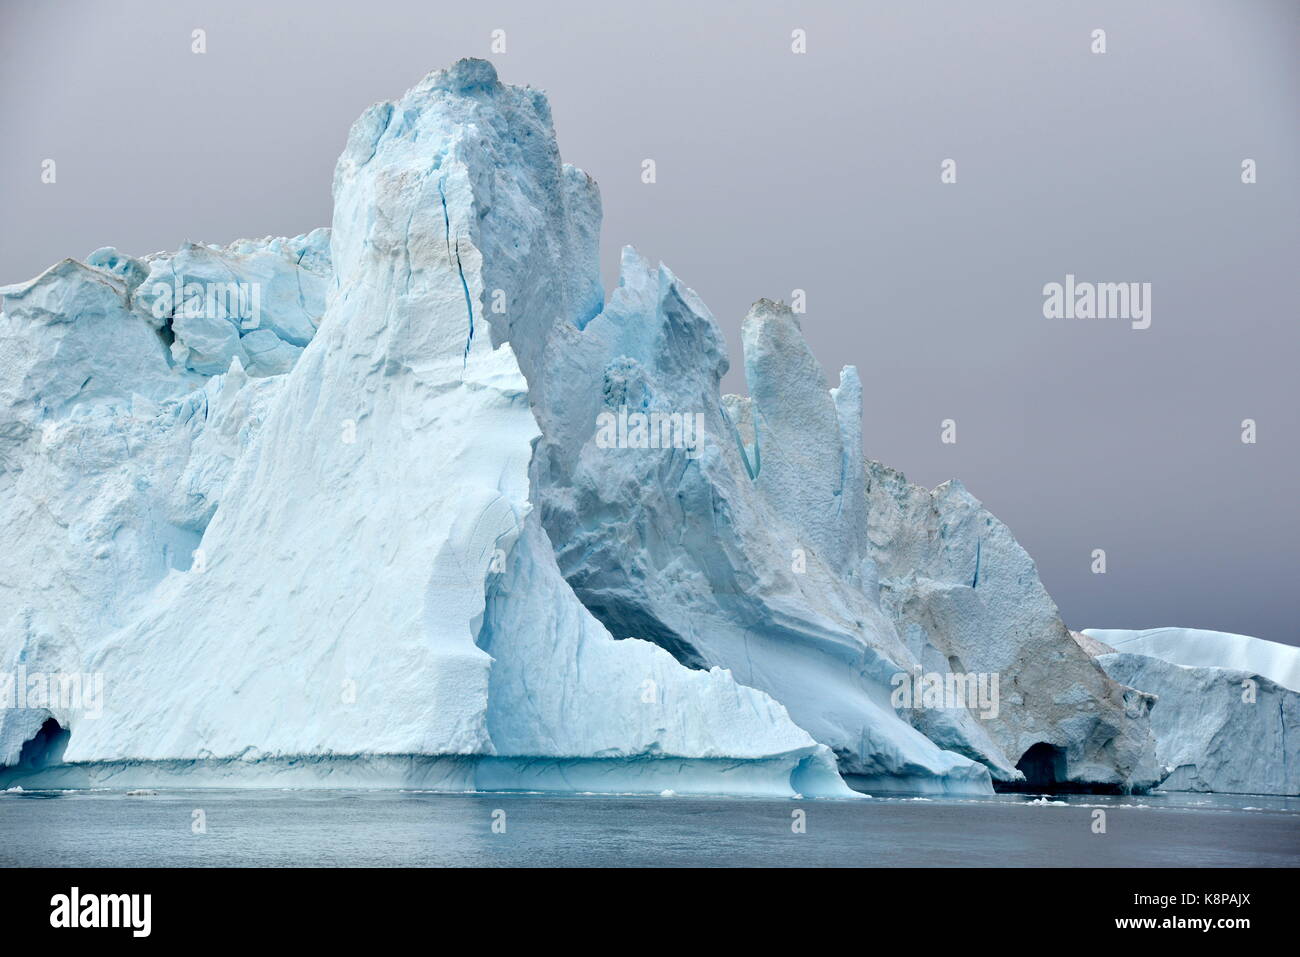 Eisberge im Fjord in der Nähe von Ilulissat an der Westküste Grönlands. Die eisberge können 100 Meter über dem Wasserspiegel zu erreichen und sind rund 65 Kilometer entfernt auf der Kangia Gletscher gebildet. Dieses ist, wie 40 Millionen Tonnen Eis in den Fjord, die von der UNESCO als Weltnaturerbe seit 2004 eingestuft wurde. Genommen 22.08.2017. Foto: Karlheinz Schindler/dpa-Zentralbild/ZB | Verwendung weltweit Stockfoto